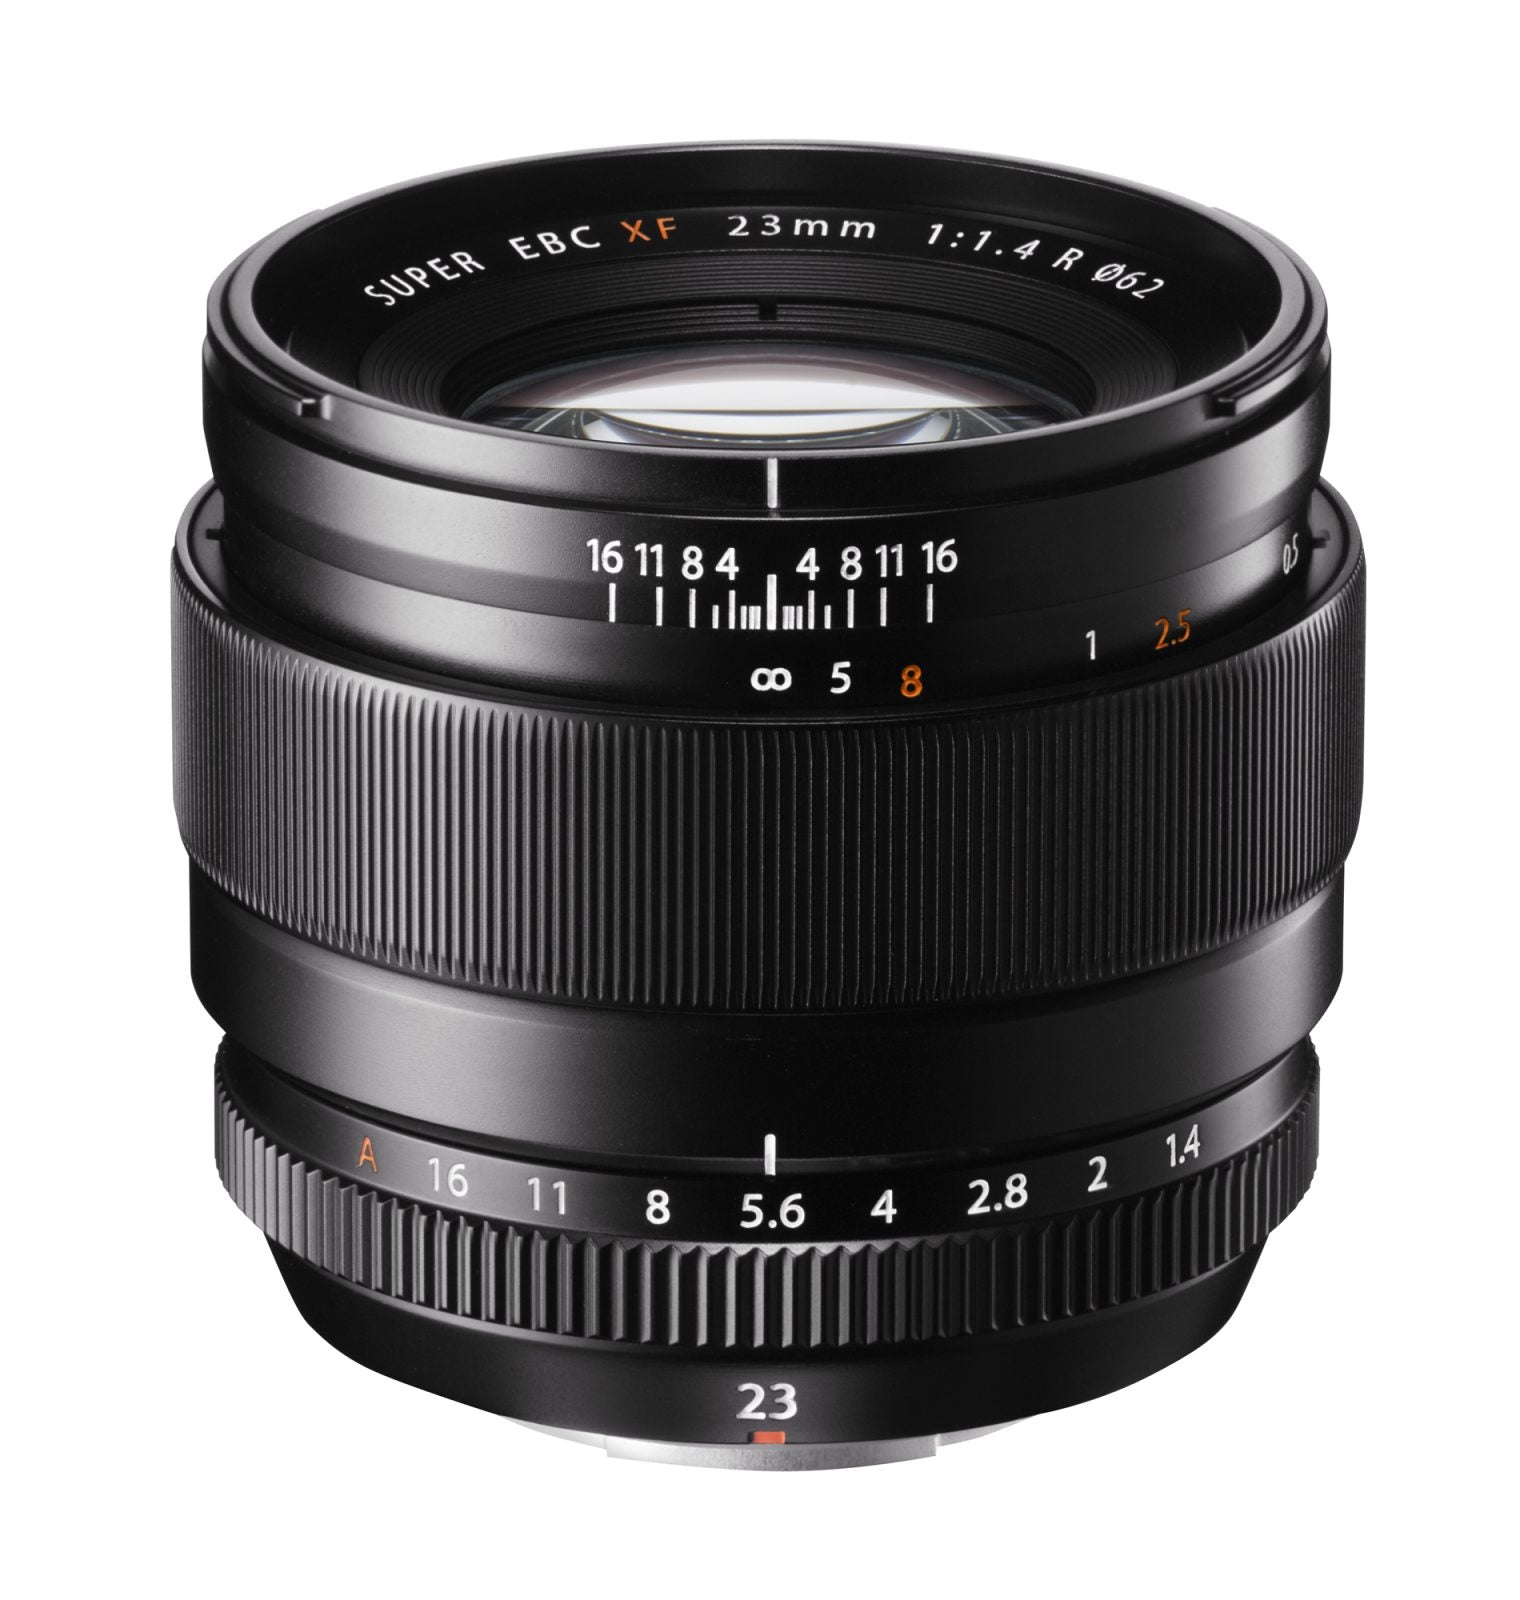 Fujifilm Announces Fujinon XF 23mm F1.4R Wide-Angle Lens